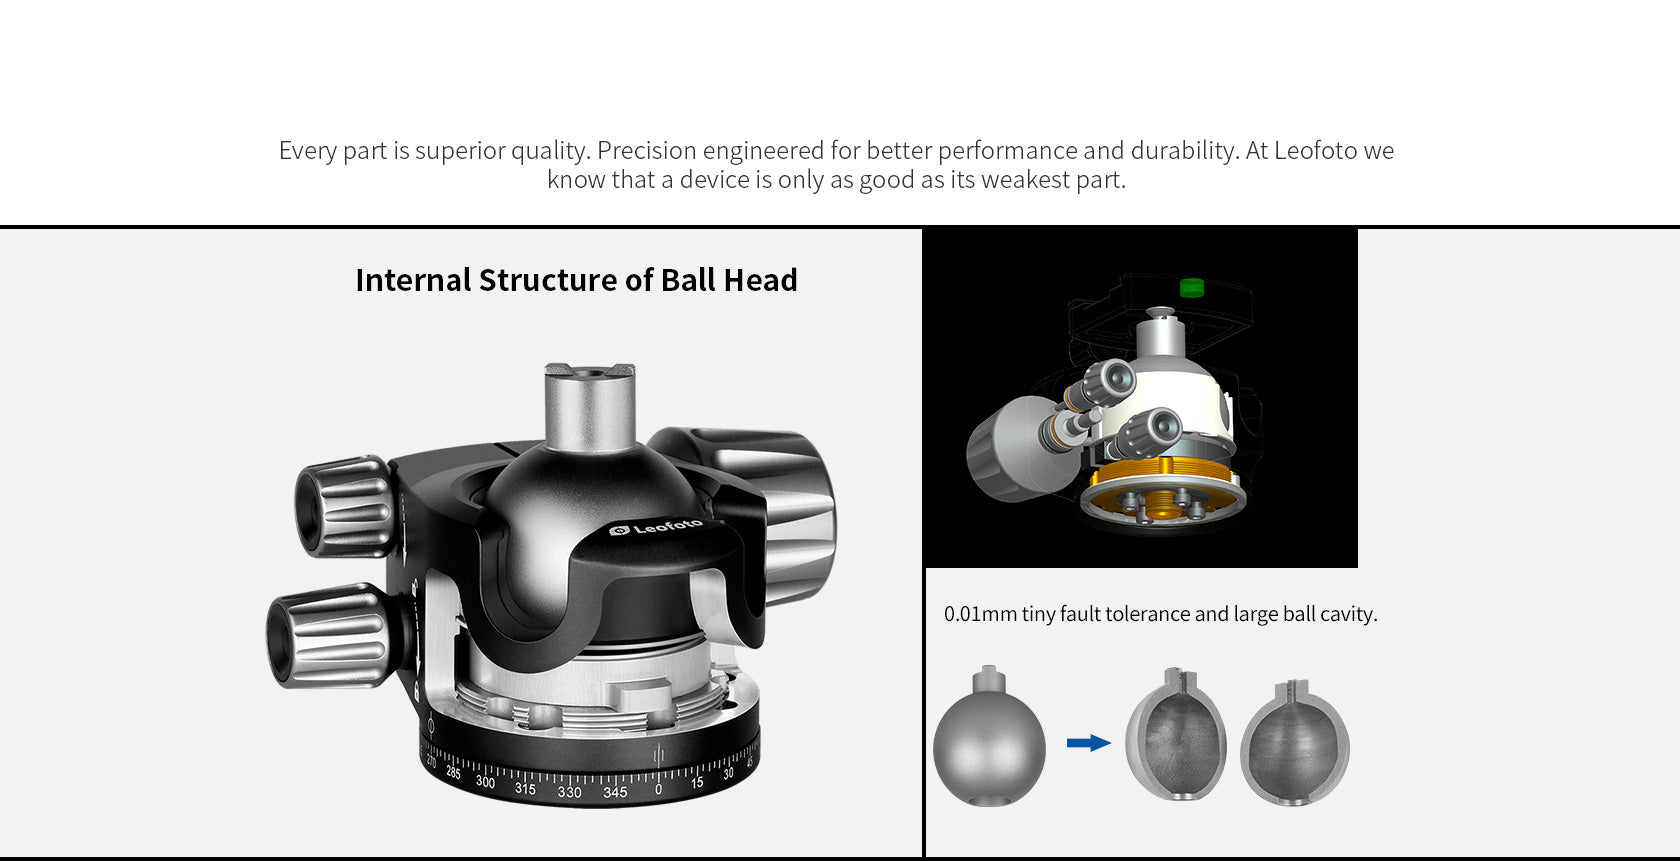 Leofoto LH-40 Low Profile Ball Head + QR Plate | Arca Compatible